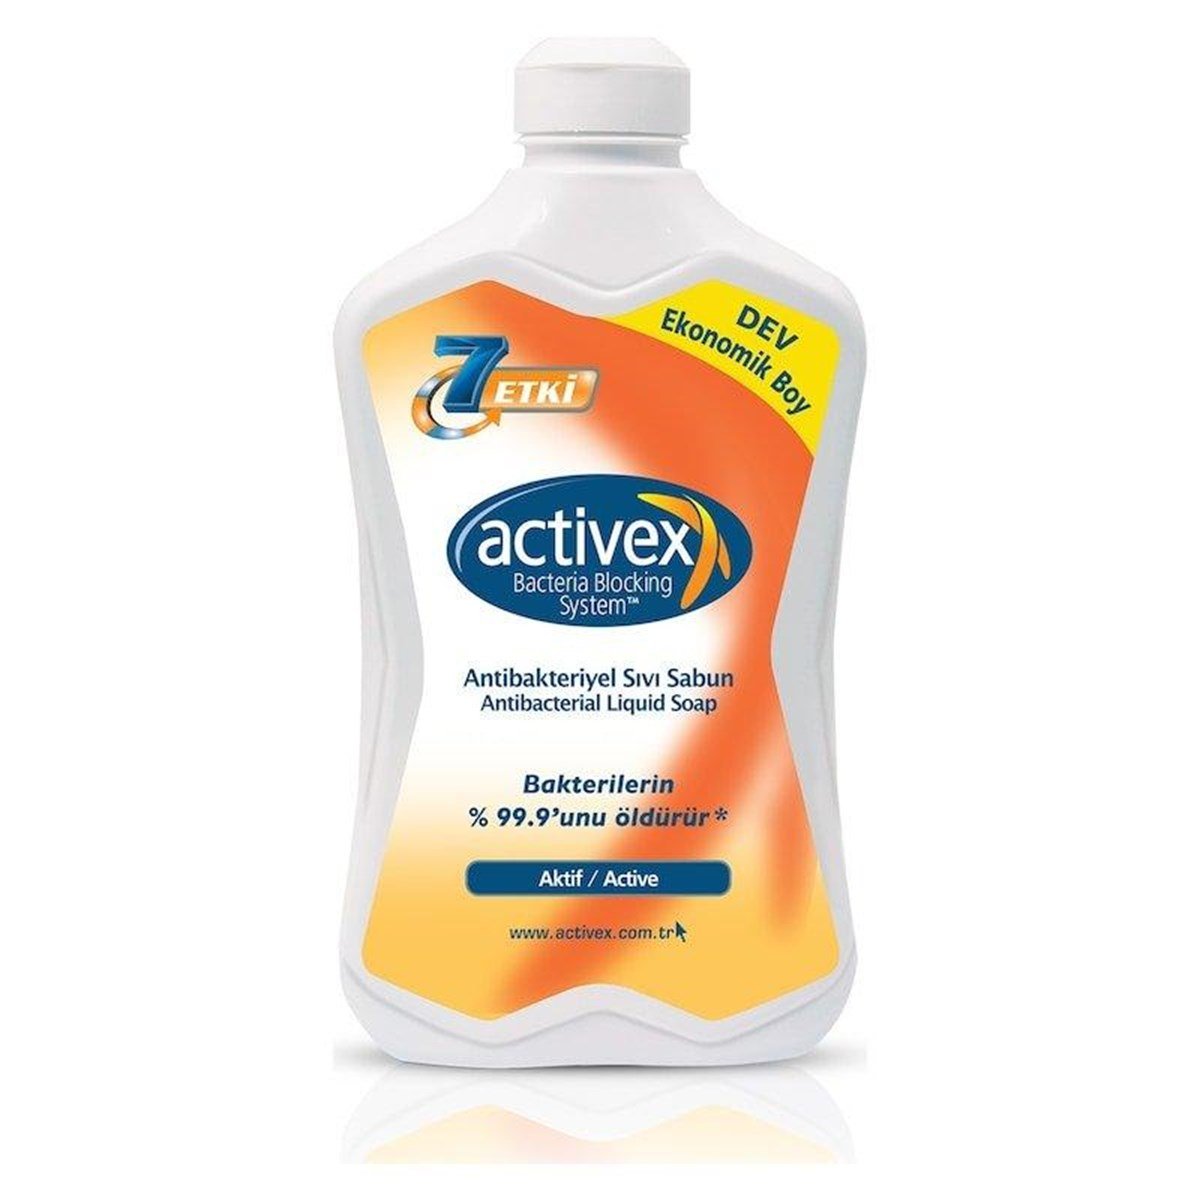 Activex Antibacterial Liquid Soap Active 1,8 lt.-LeylekKapida.com